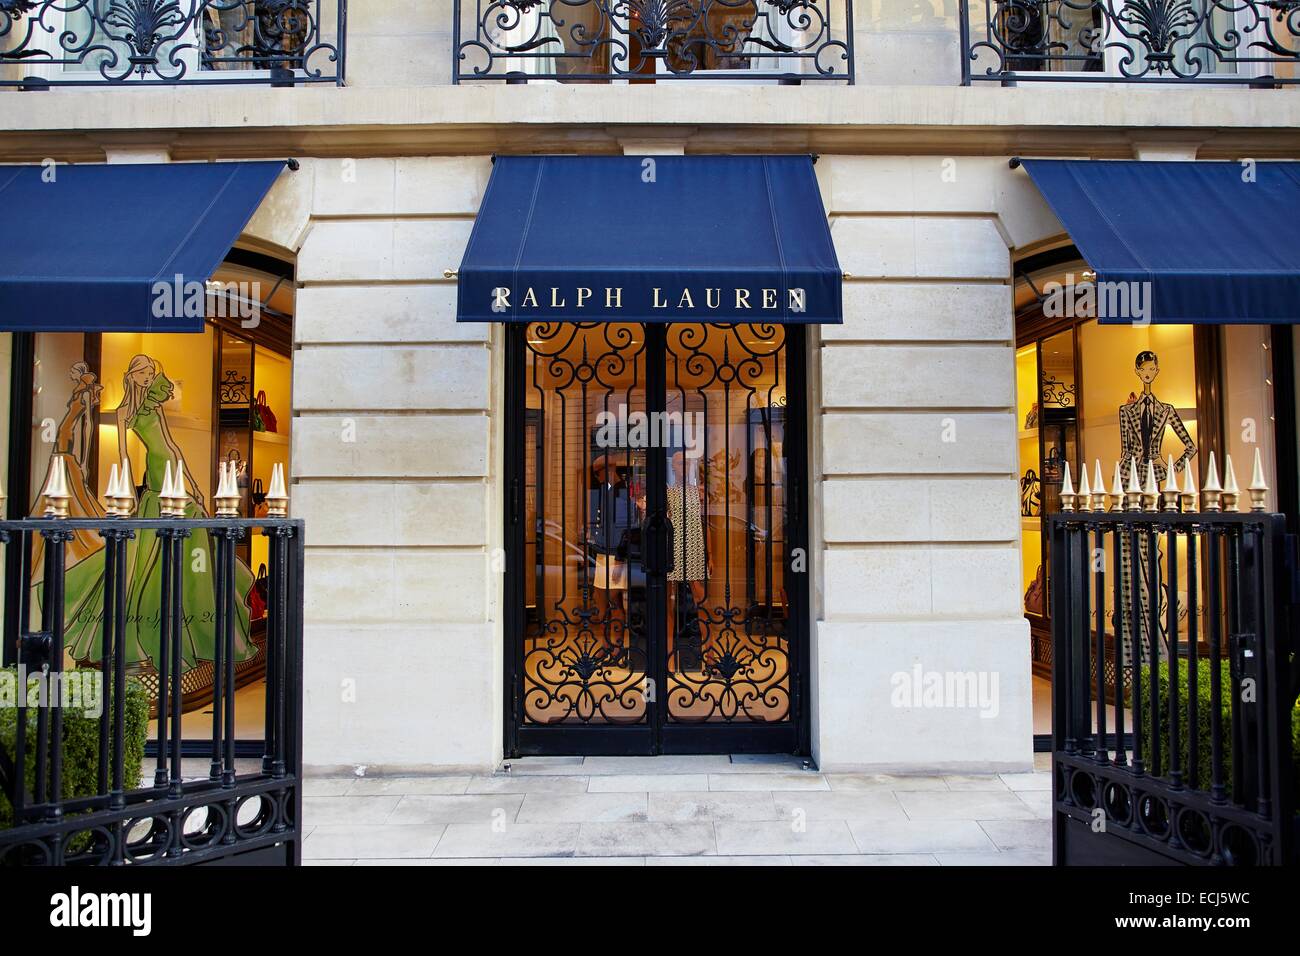 France, Paris, Luxury shops on Montaigne Avenue, Ralph Lauren Stock Photo -  Alamy